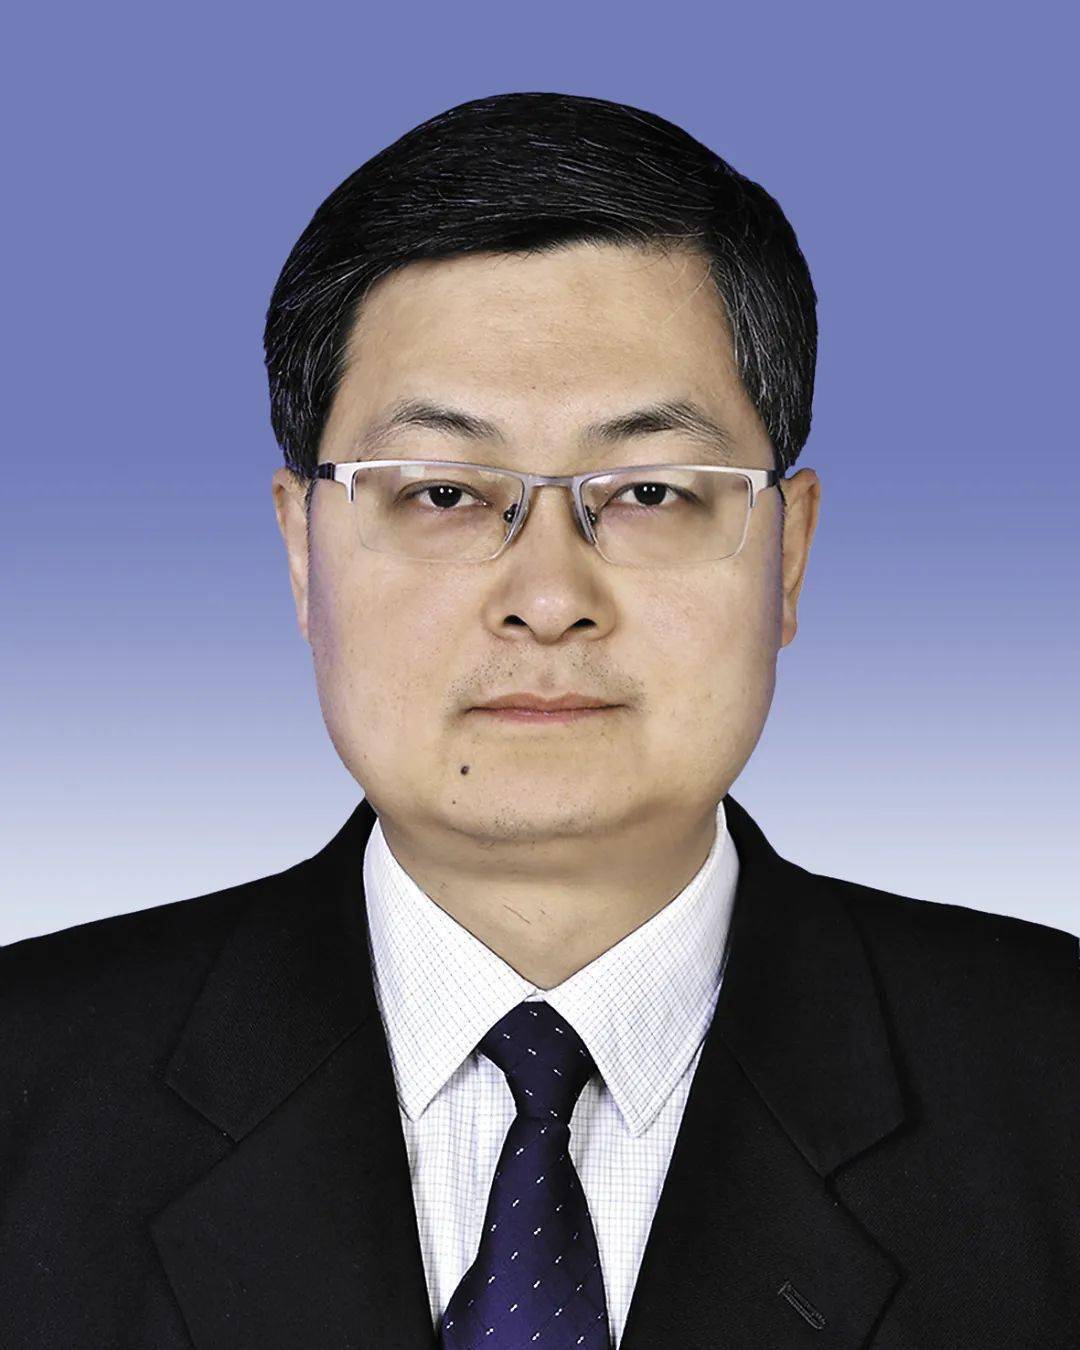 张胜利男,汉族,1968年2月生,研究生,中共党员,当选为榆林市委书记